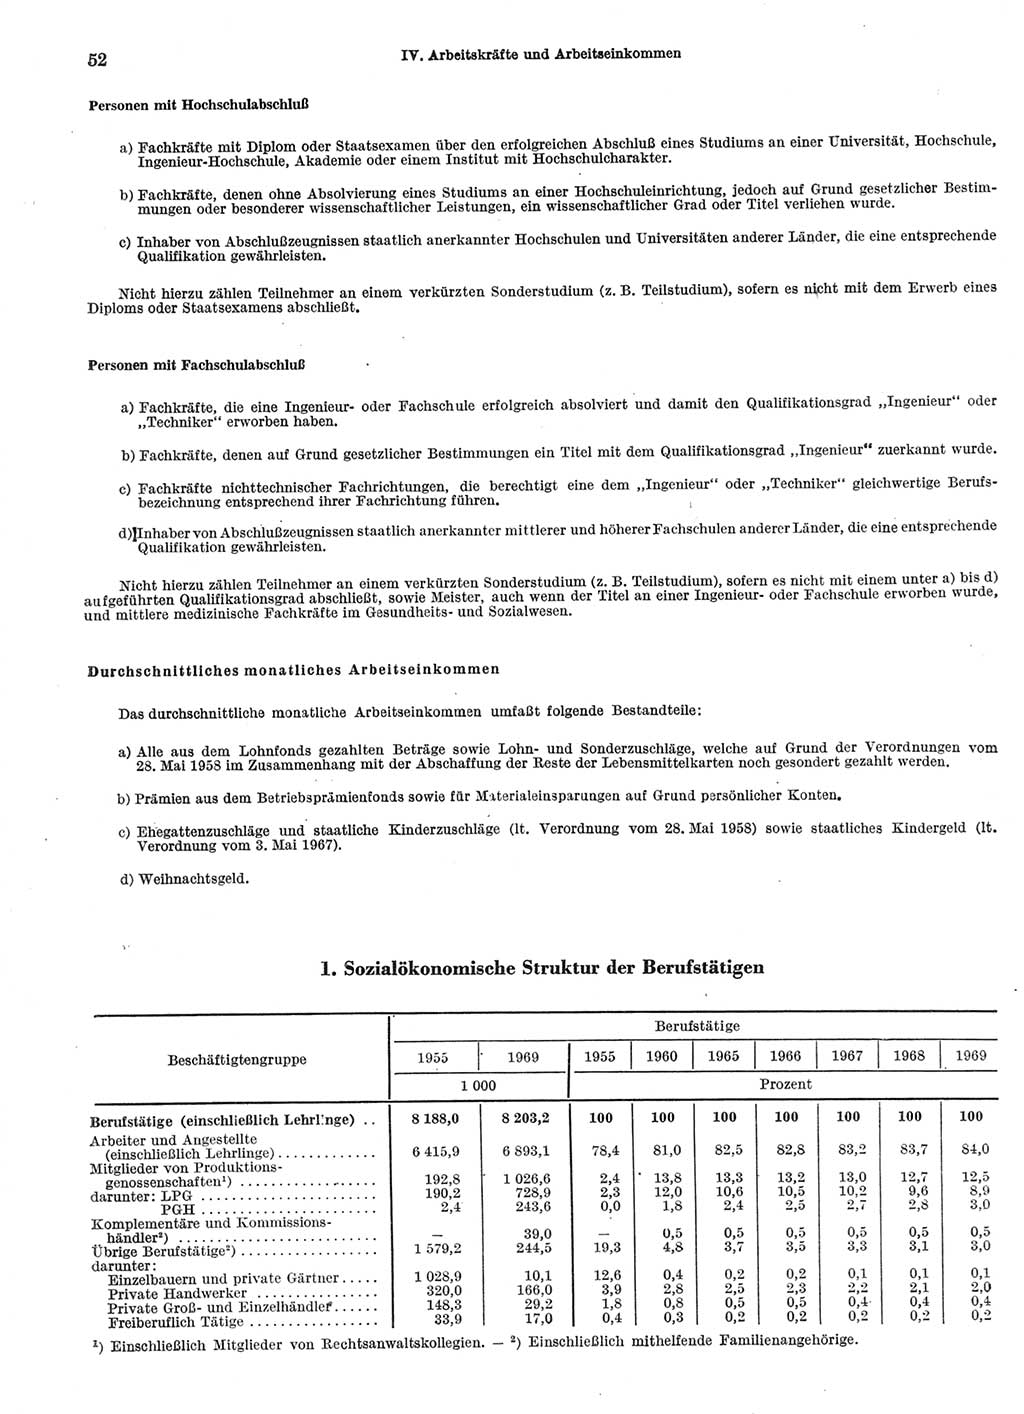 Statistisches Jahrbuch der Deutschen Demokratischen Republik (DDR) 1970, Seite 52 (Stat. Jb. DDR 1970, S. 52)